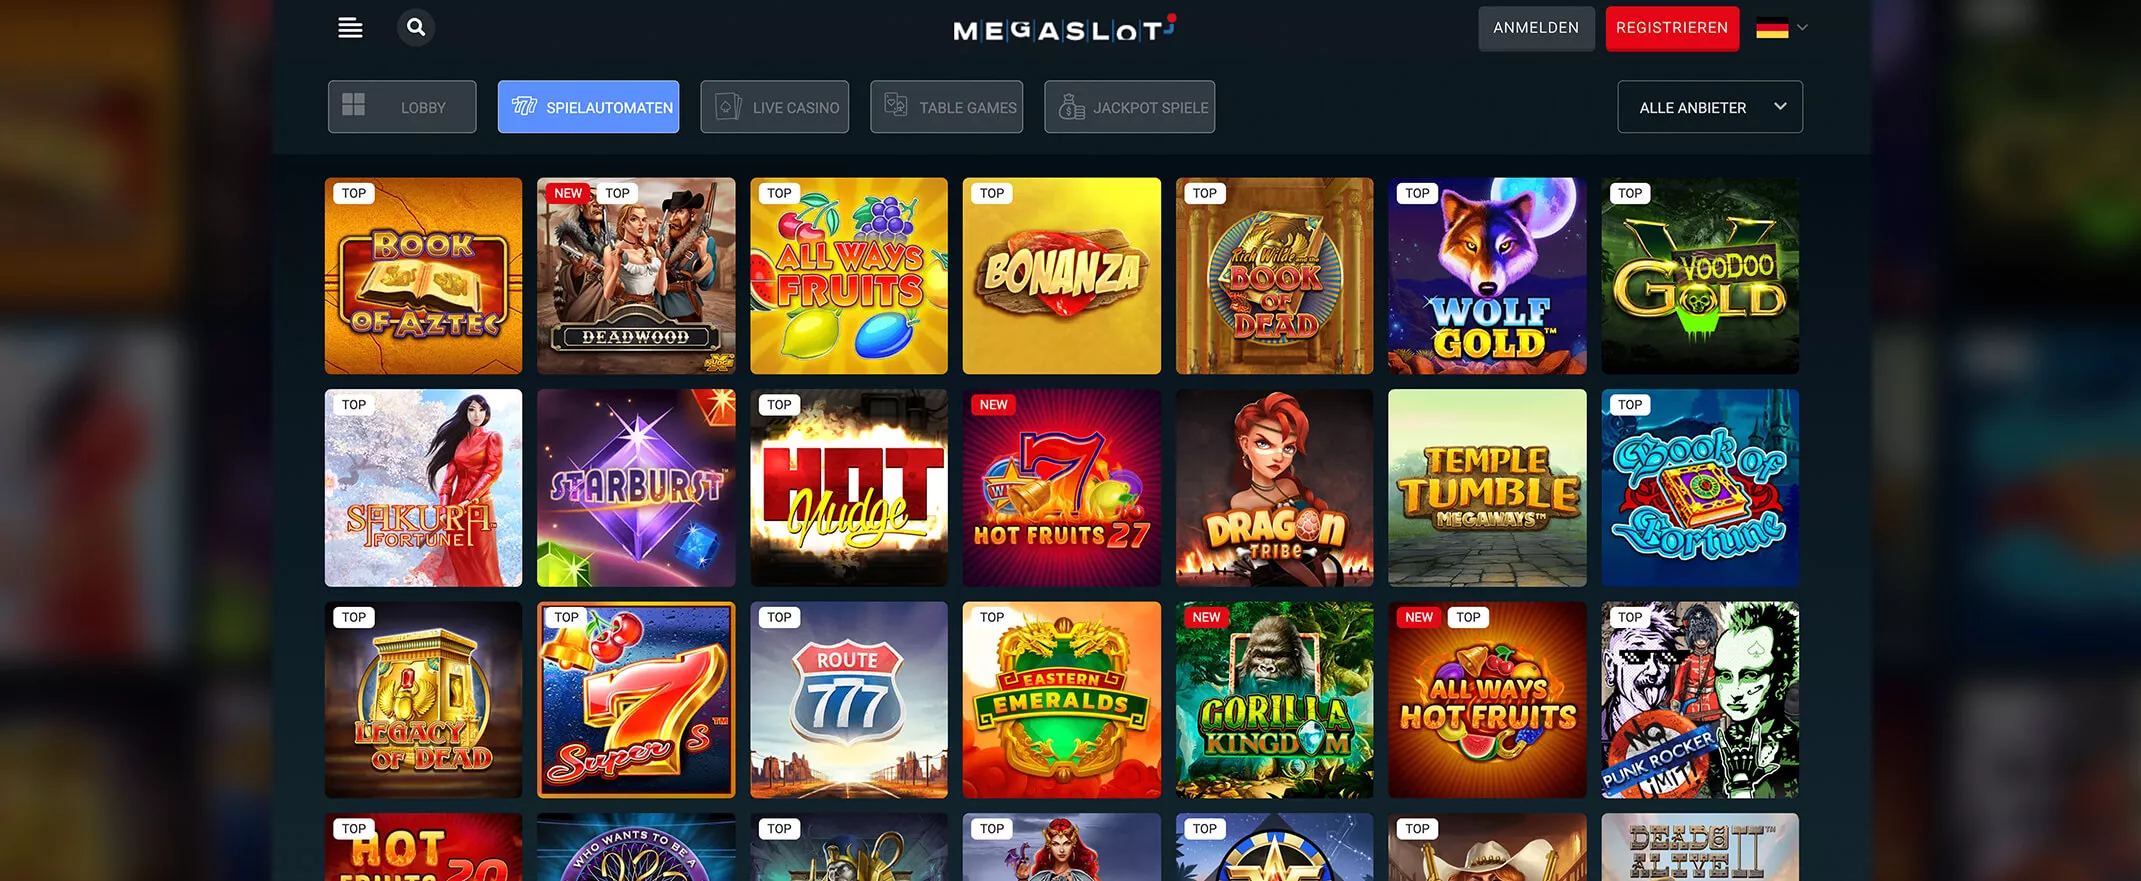 MegaSlot Casino spielautomaten